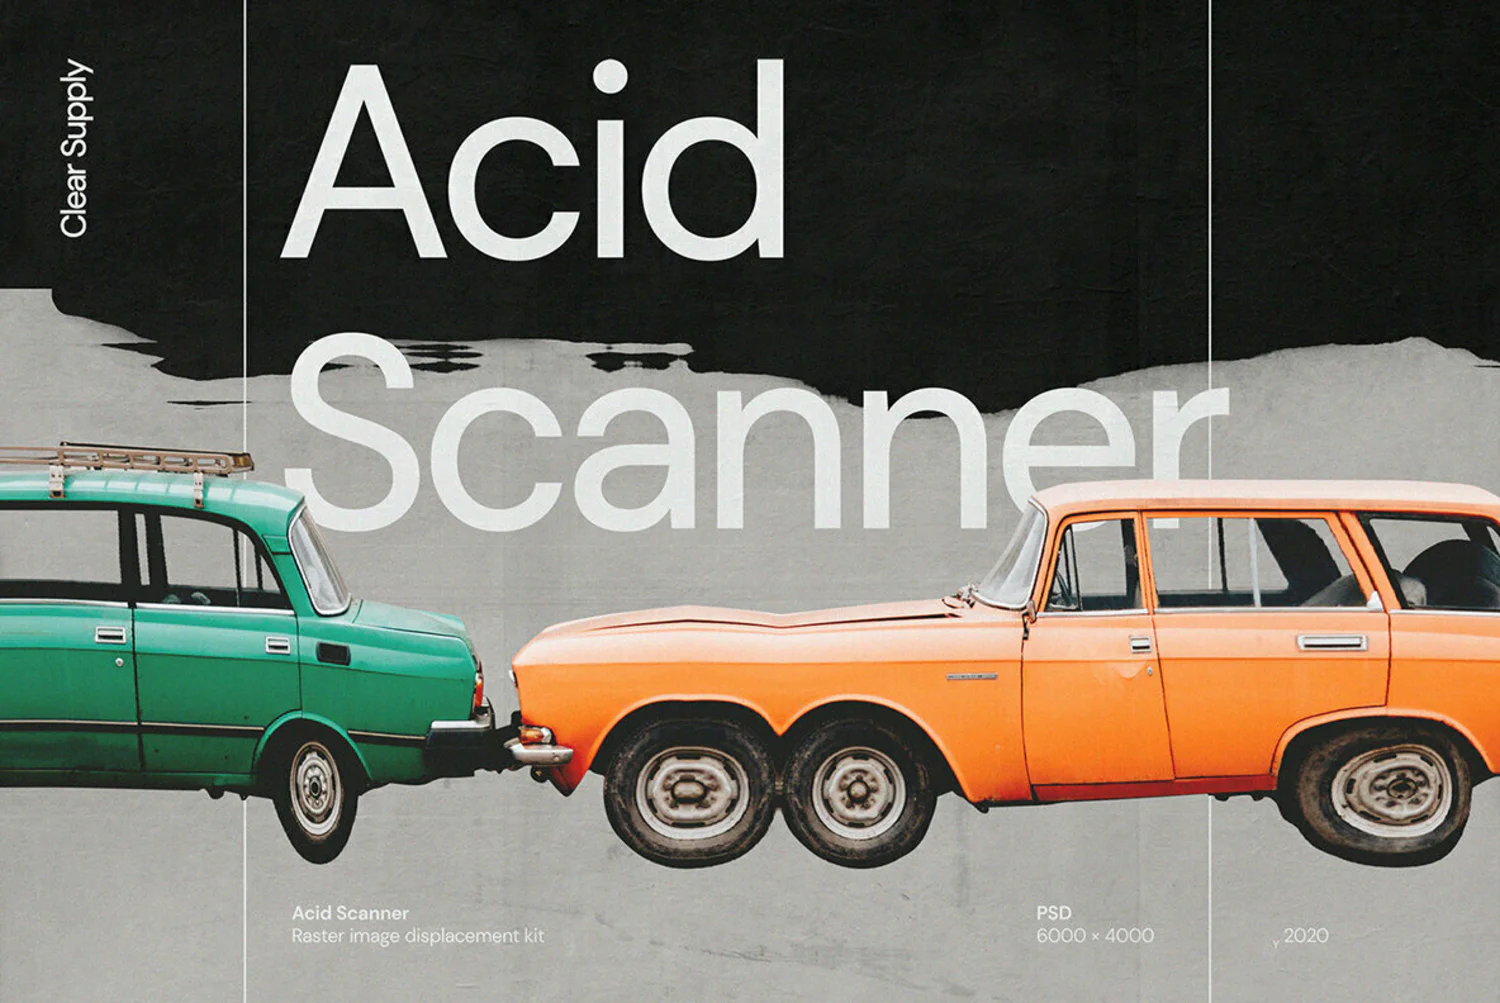 1889 60款高清扭曲故障位移海报设计效果样机PSD模版设计素材 Clear Supply – Acid Scanner